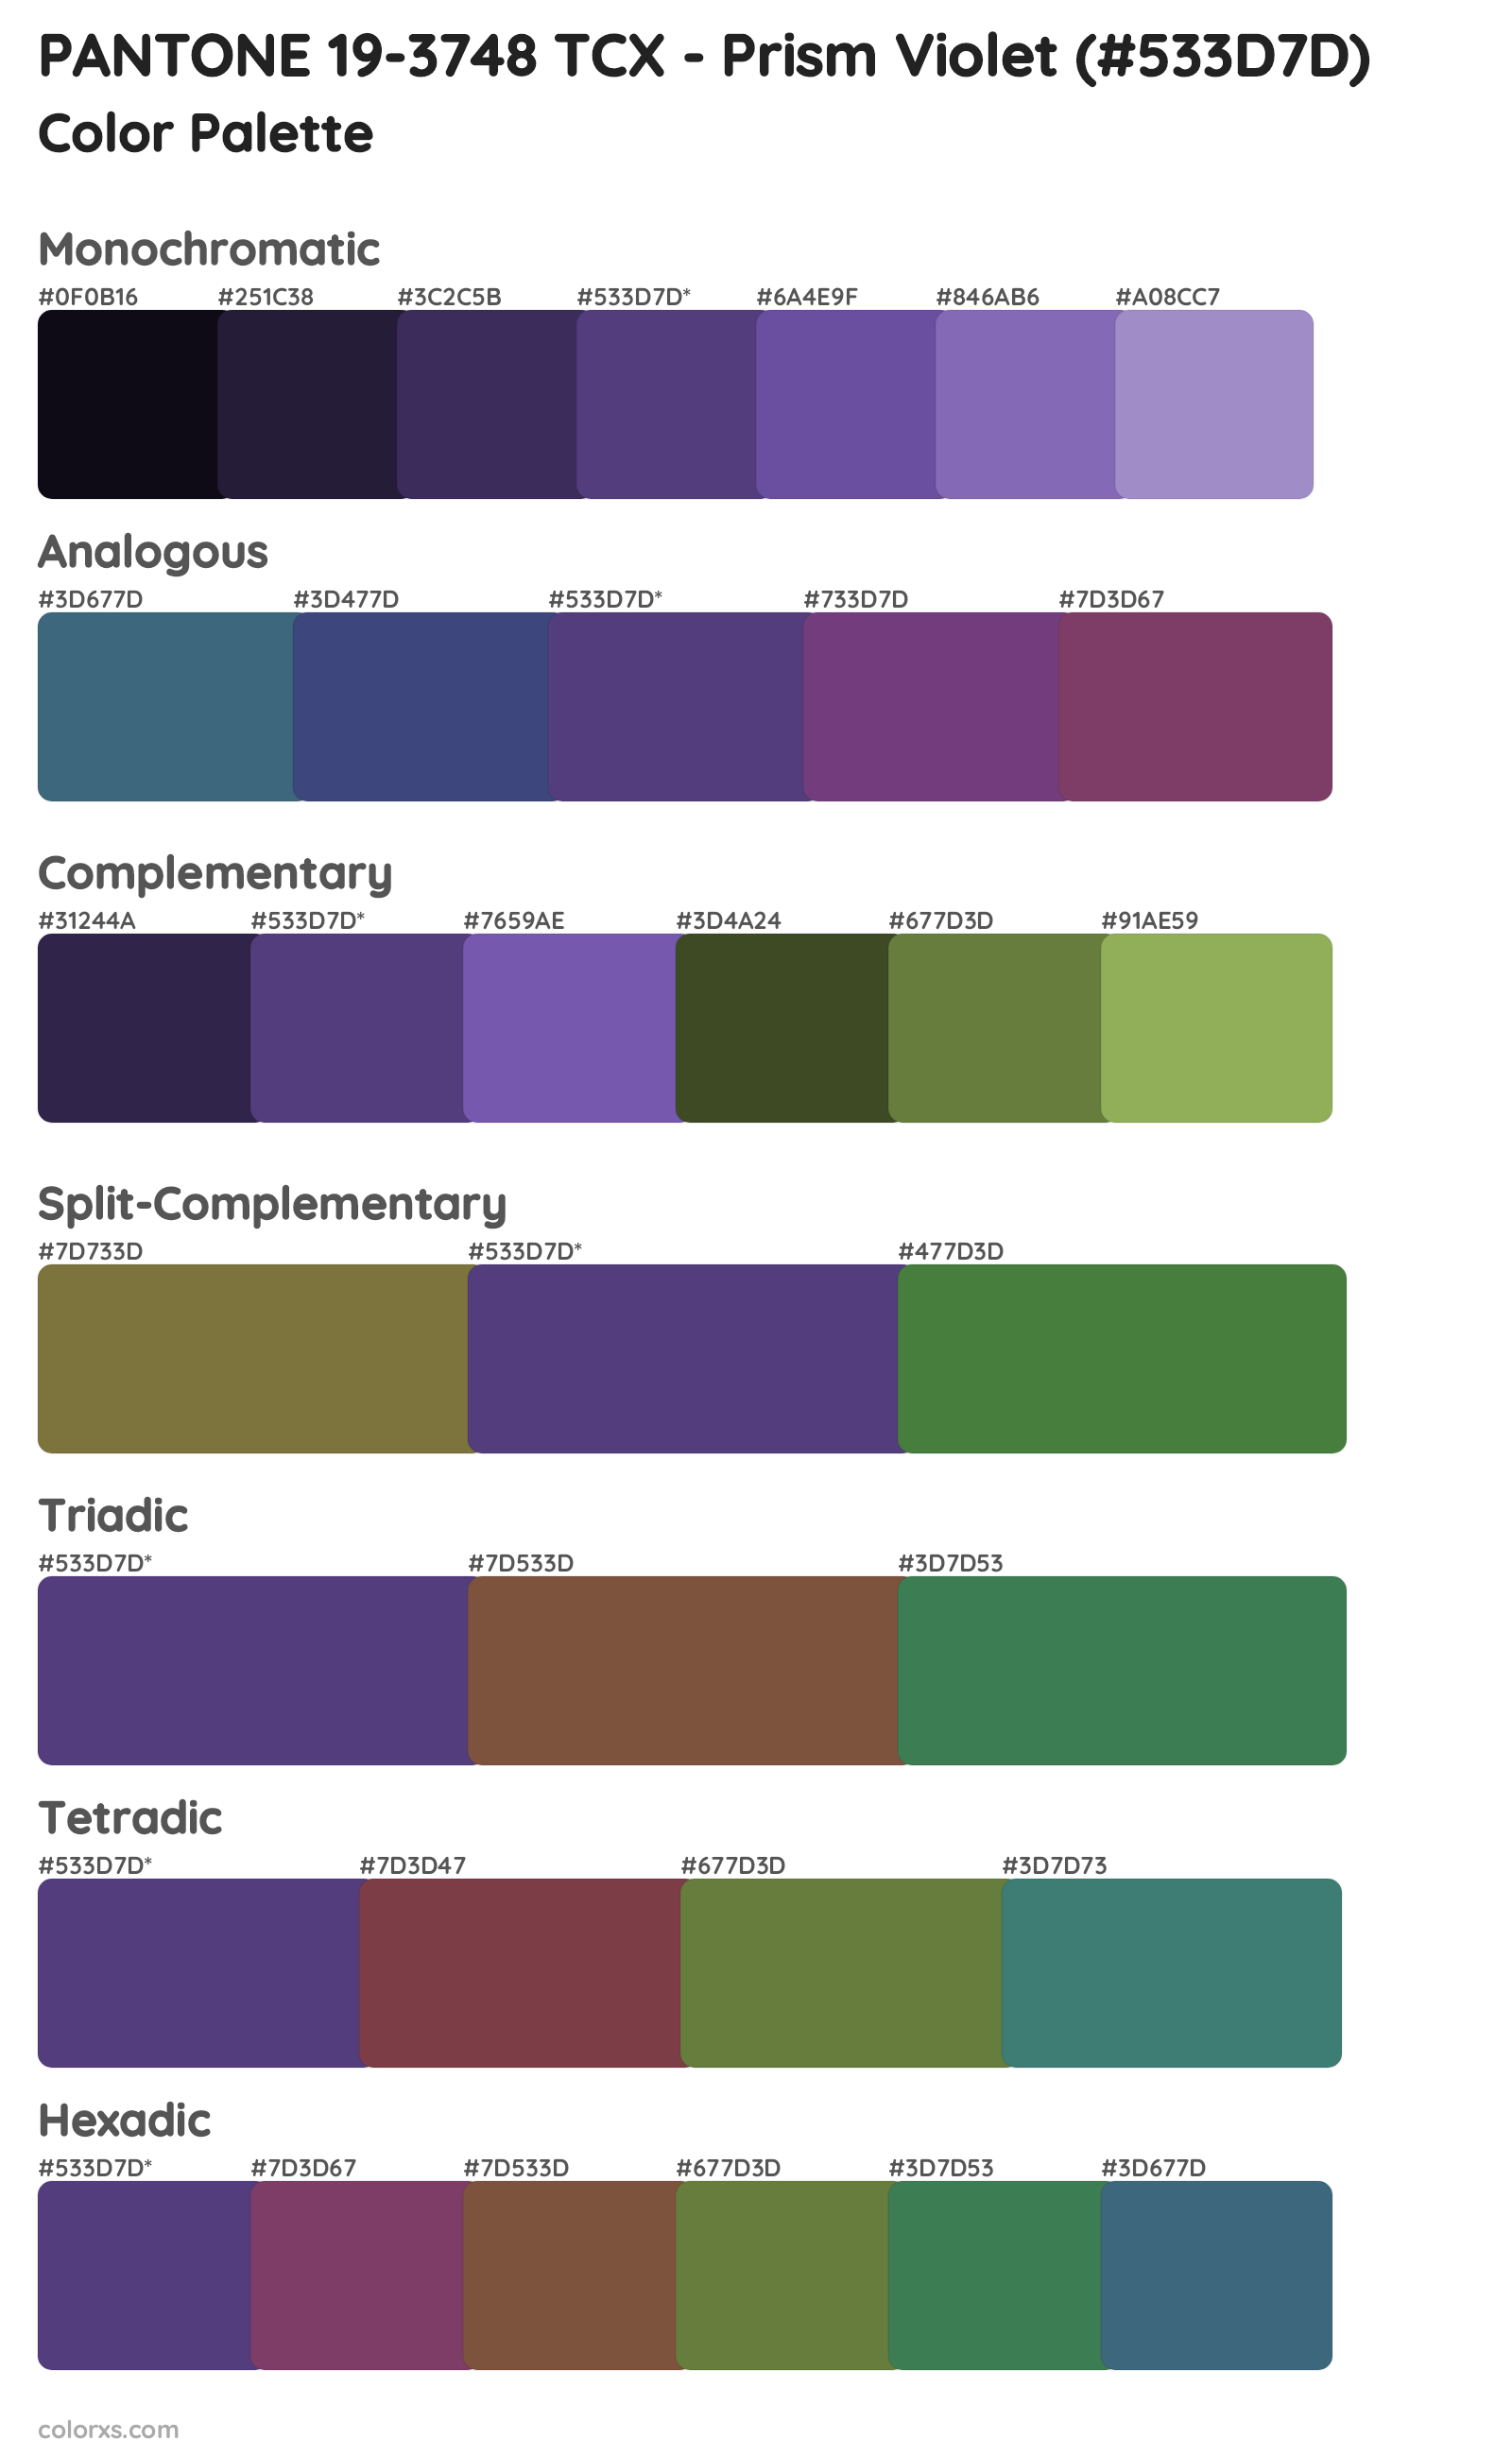 PANTONE 19-3748 TCX - Prism Violet Color Scheme Palettes